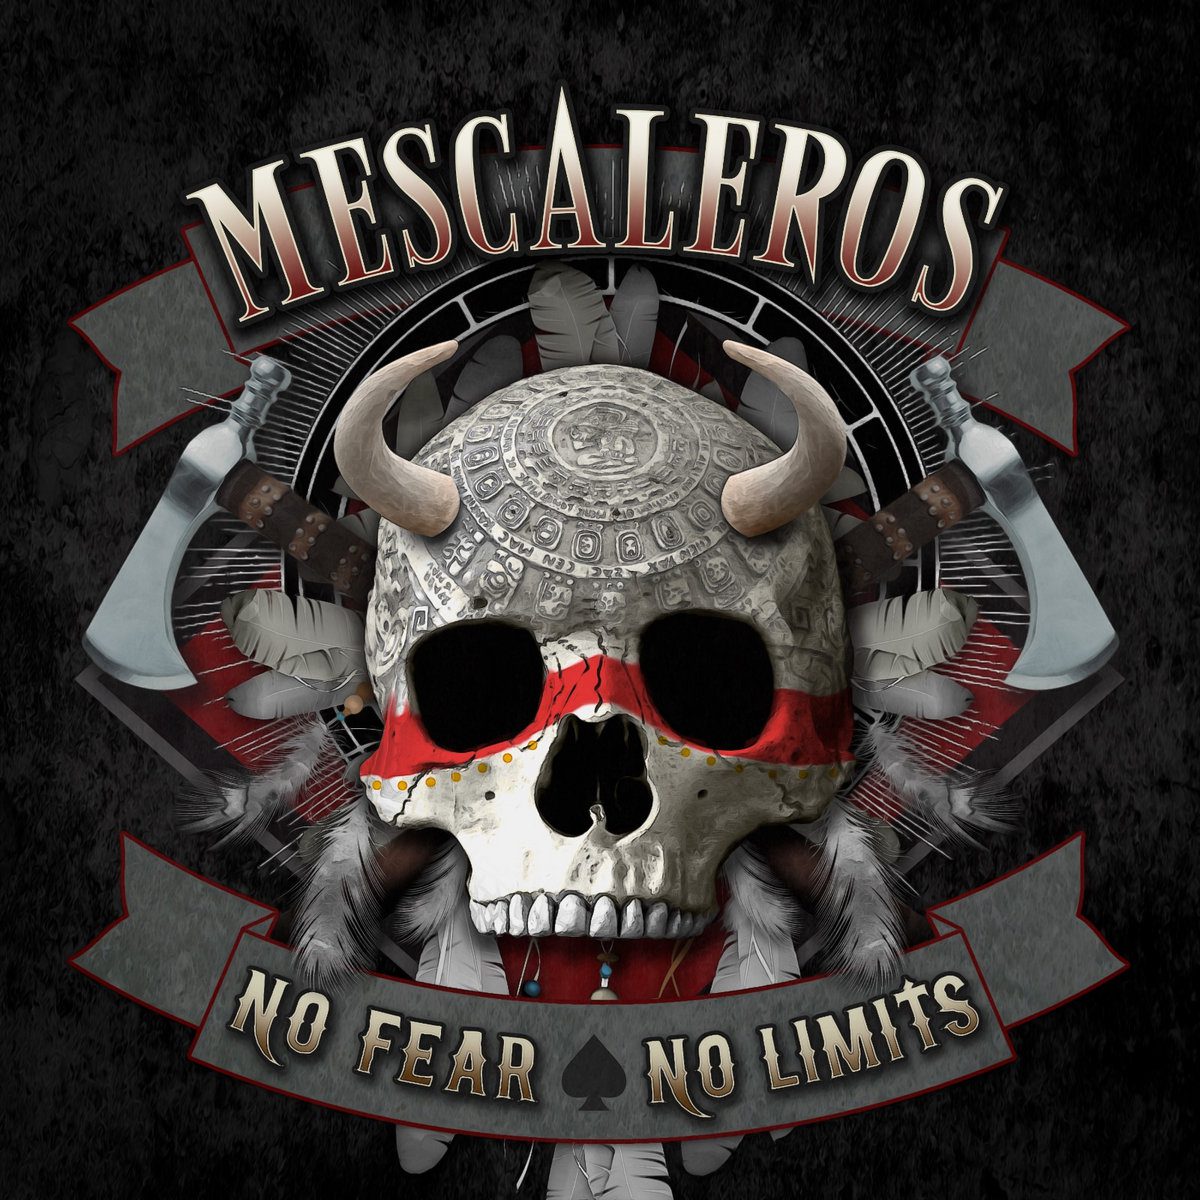 MESCALEROS – No fear no limits